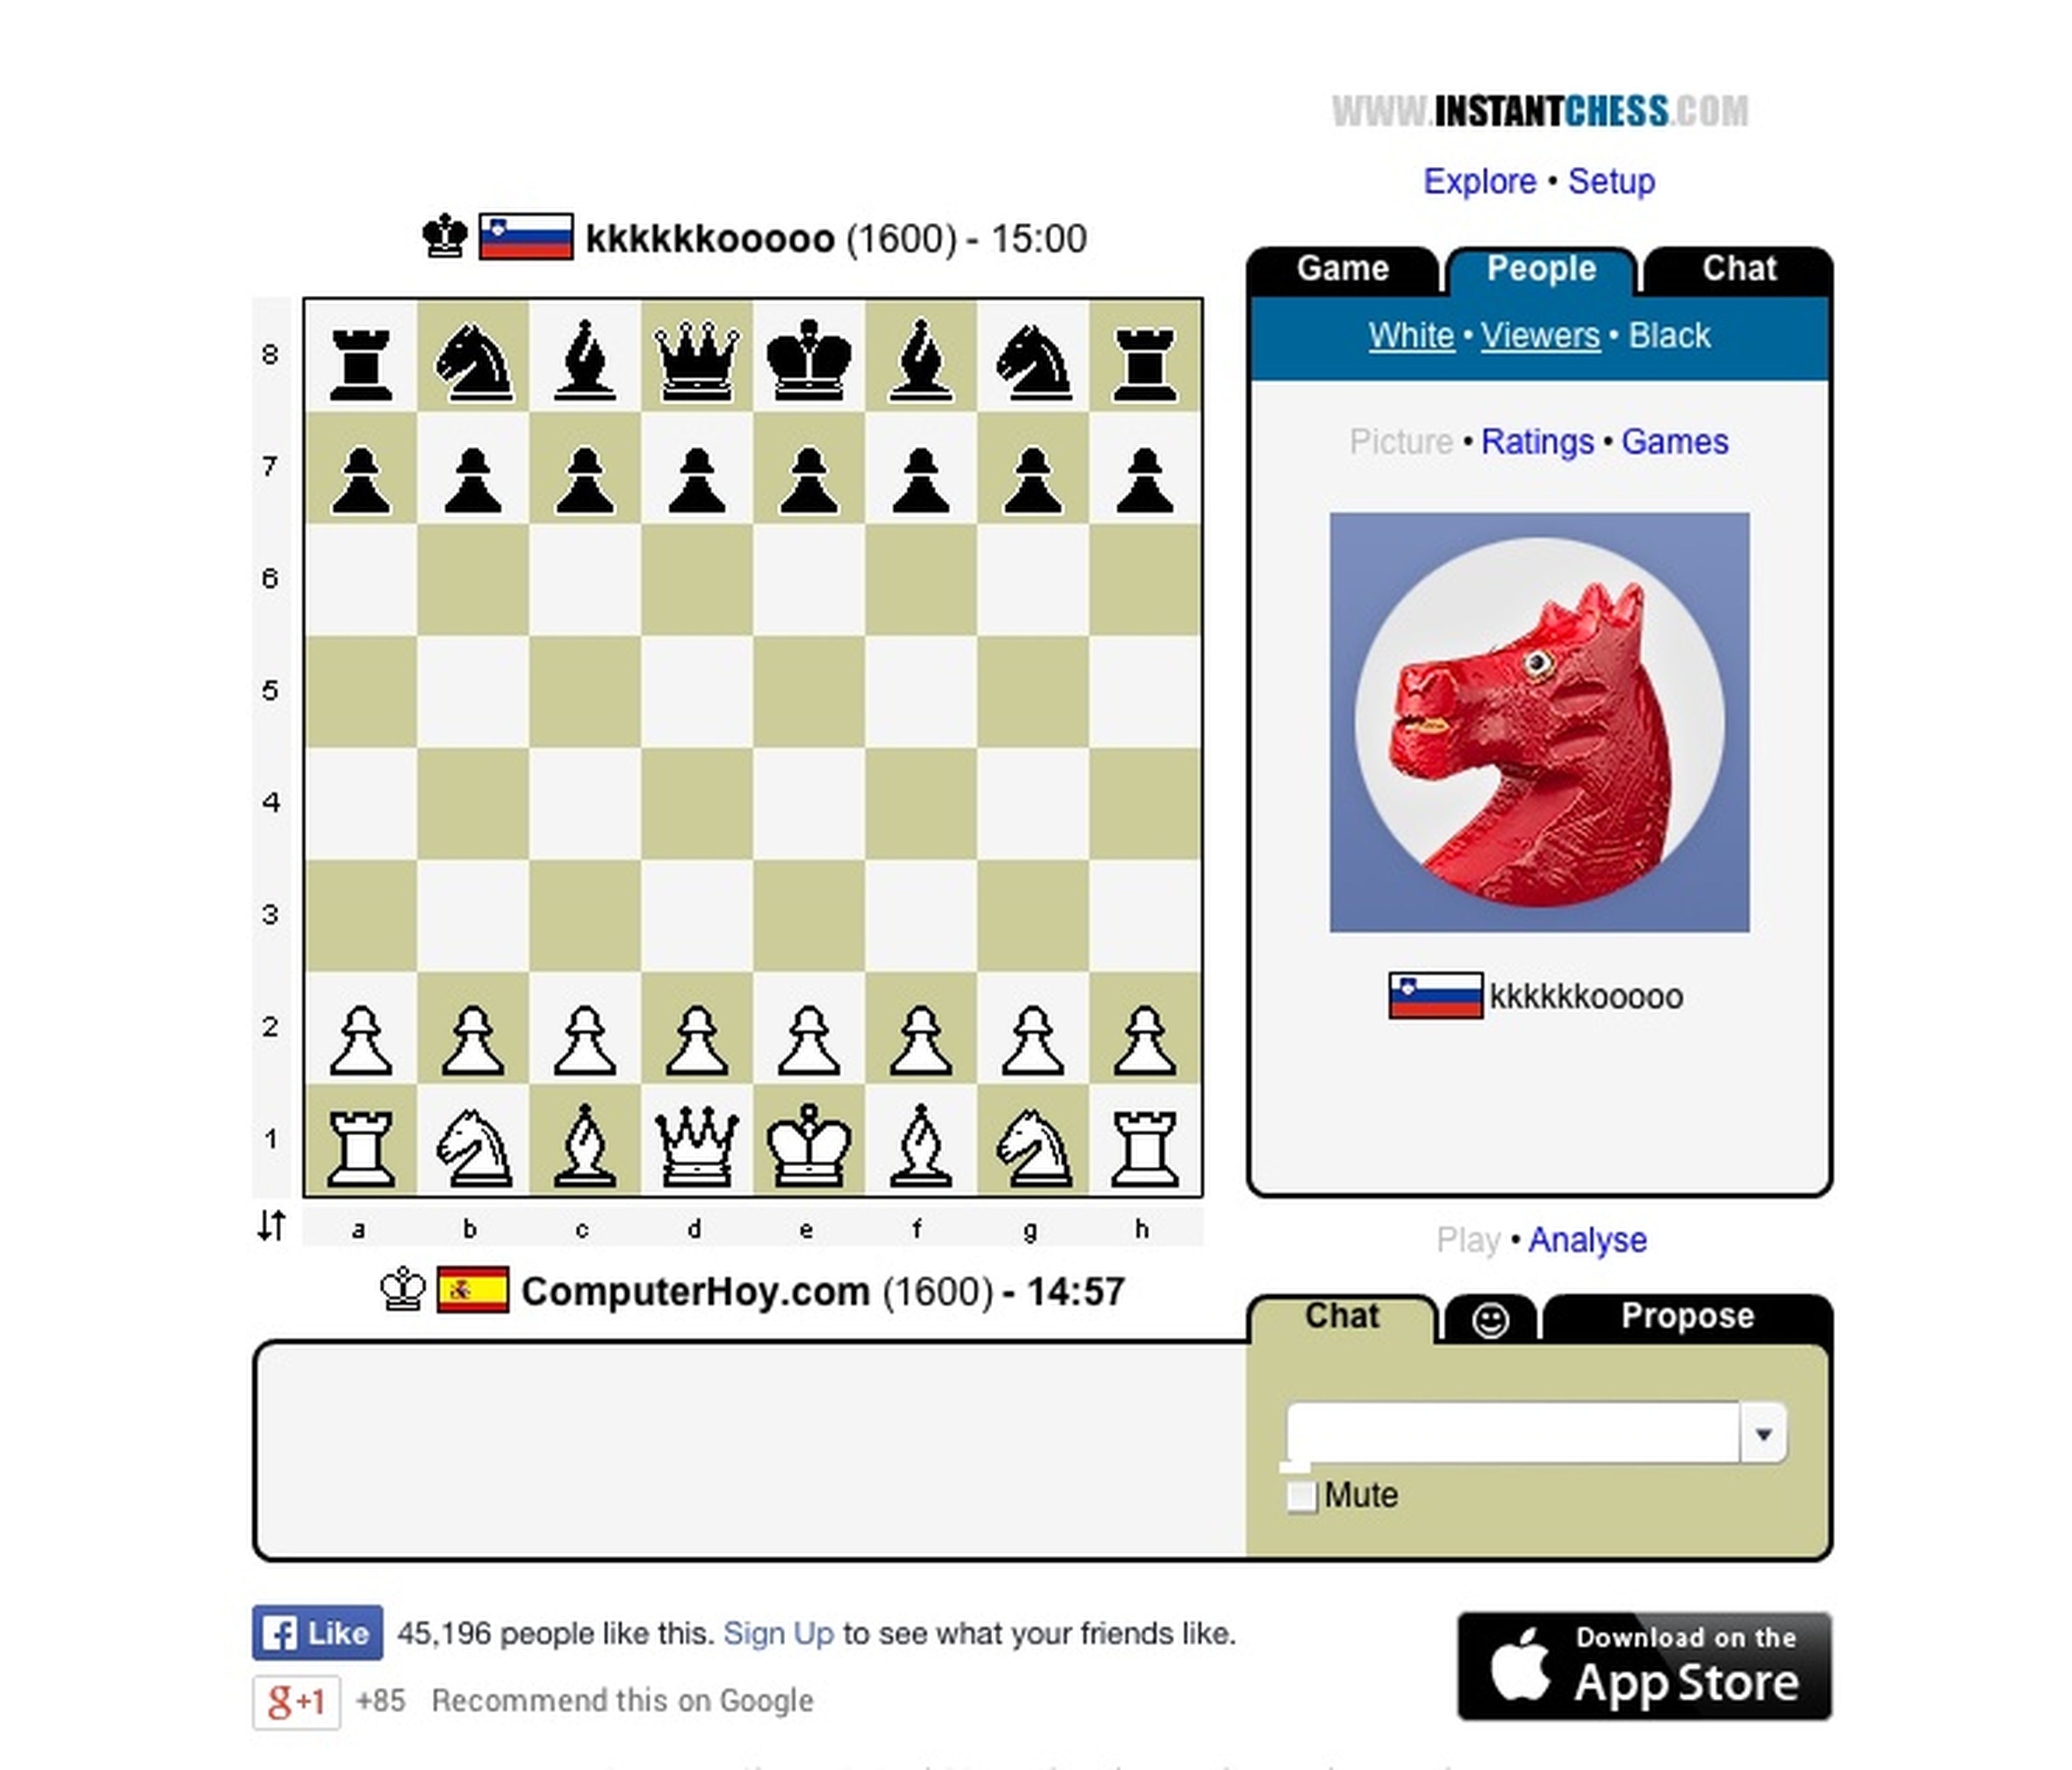 Los mejores juegos de ajedrez online para jugar contra otras